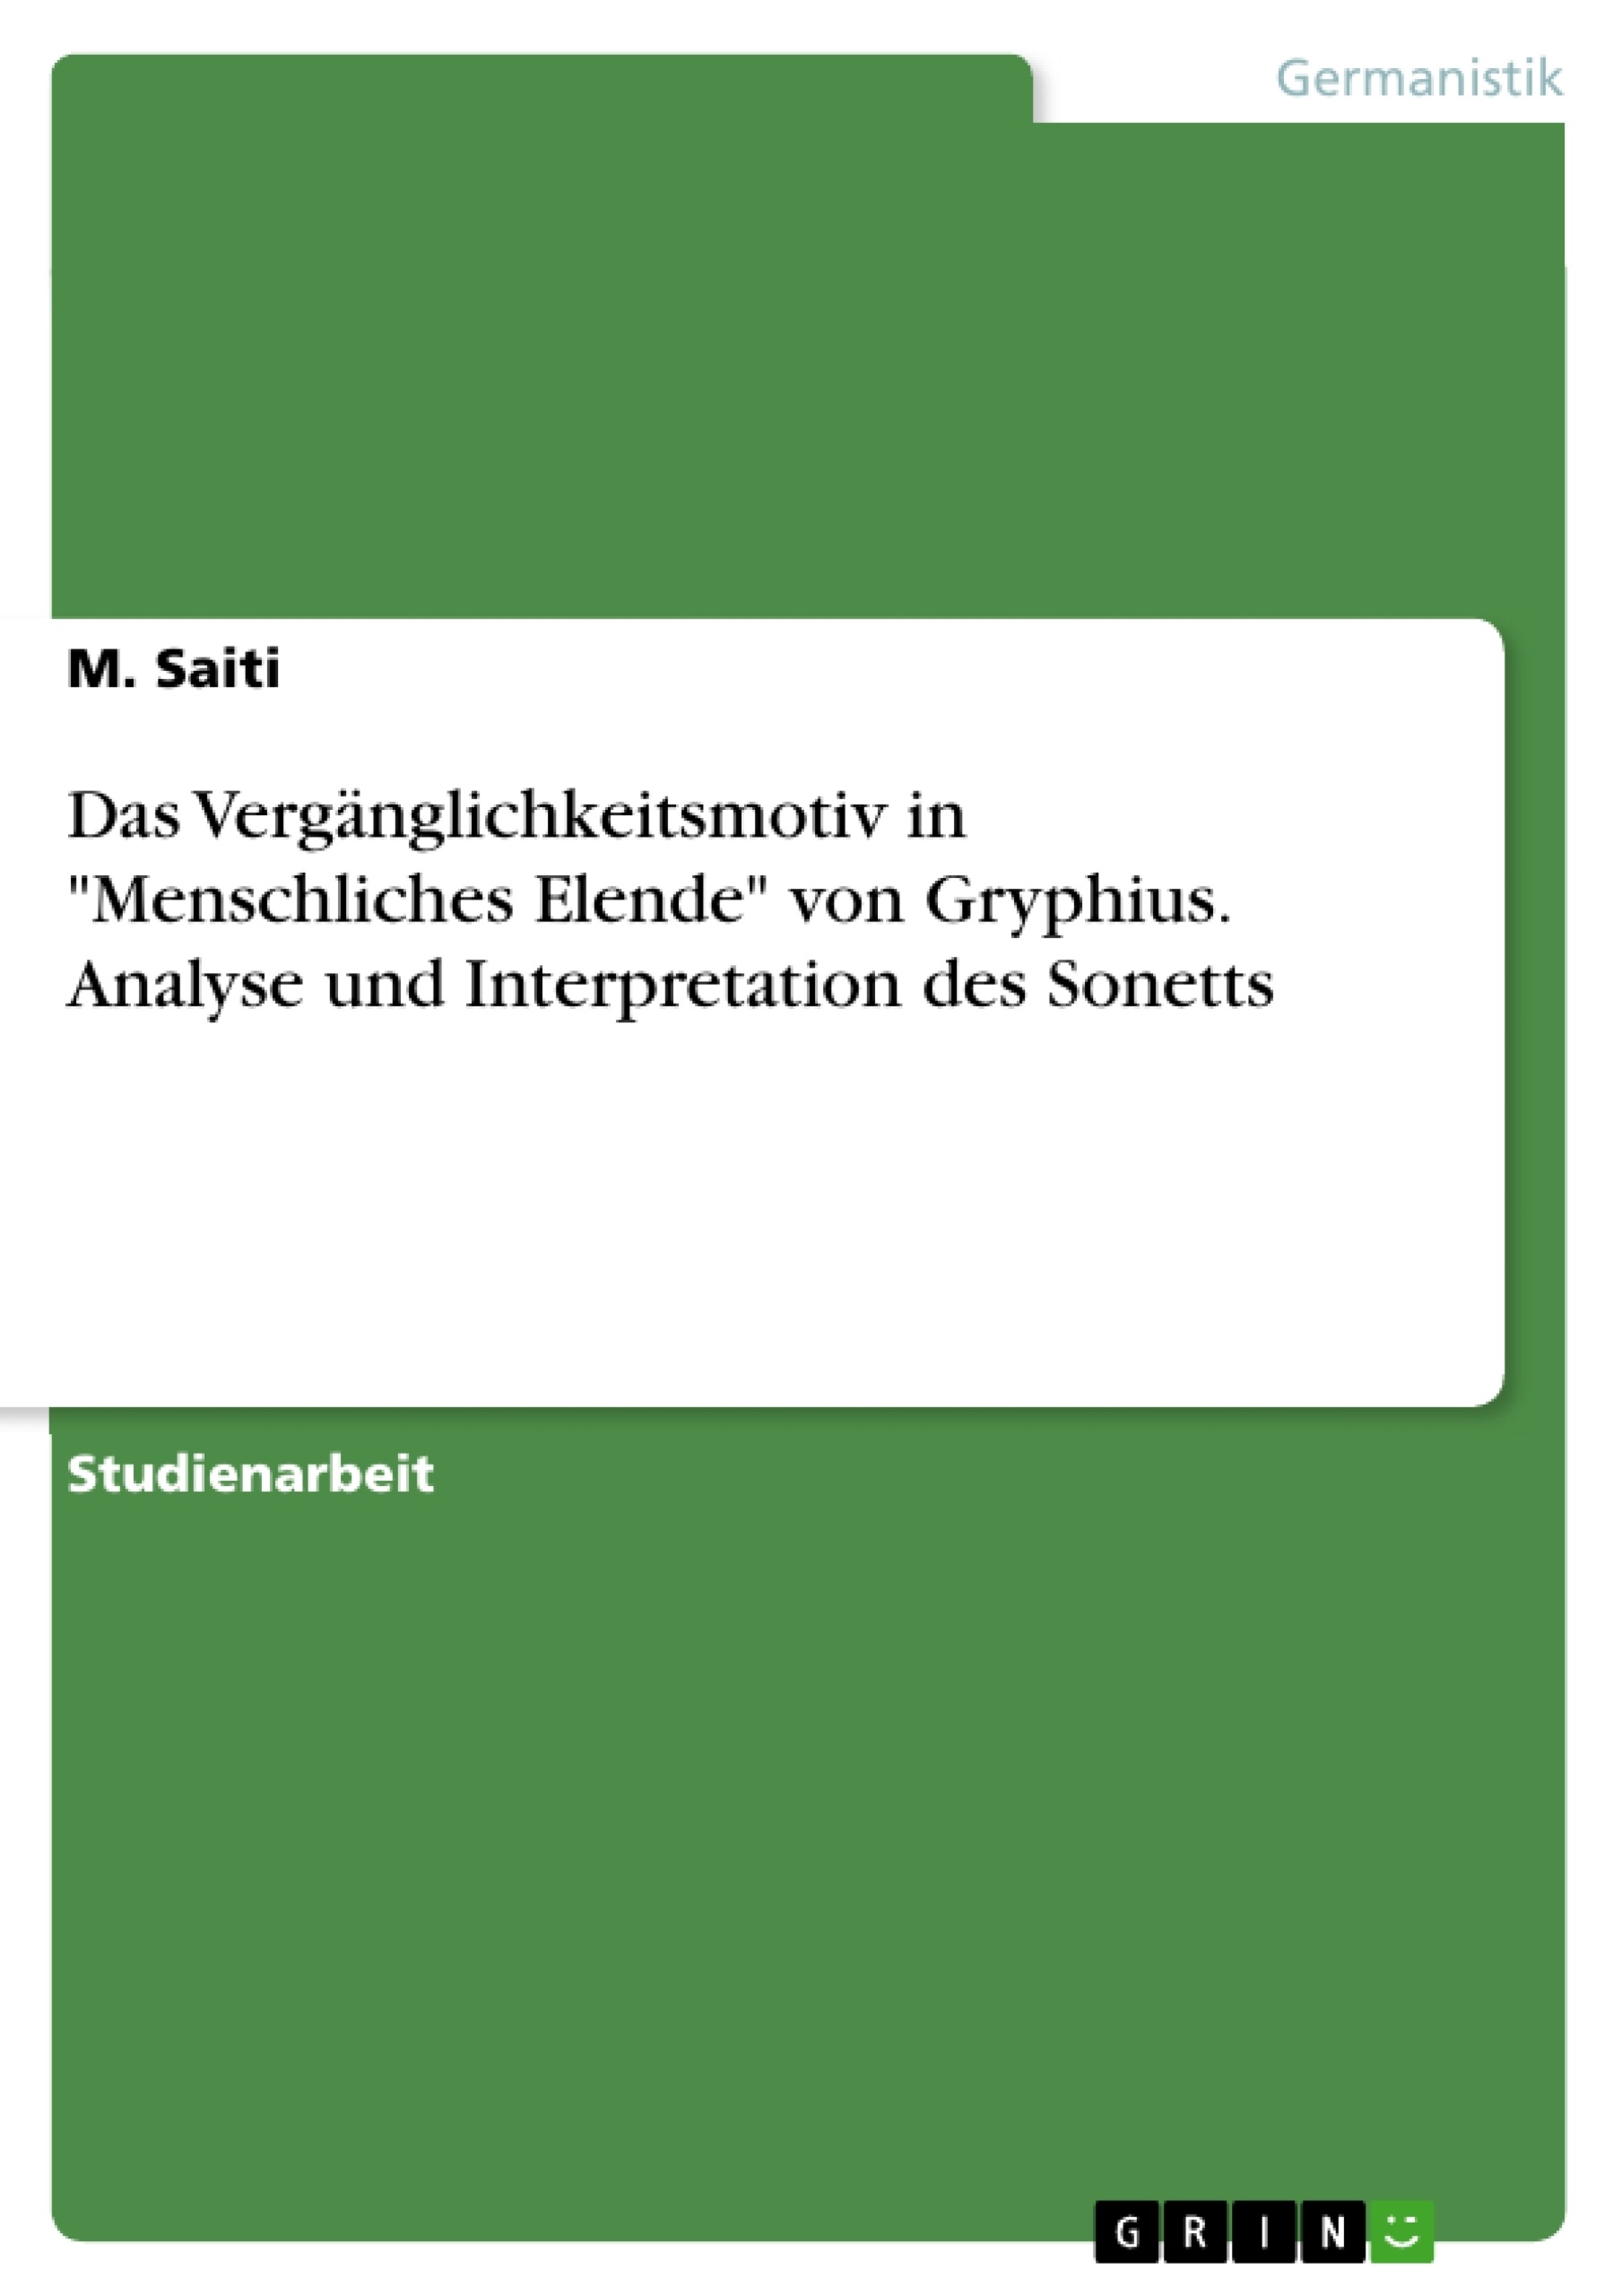 Title: Das Vergänglichkeitsmotiv in "Menschliches Elende" von Gryphius. Analyse und Interpretation des Sonetts